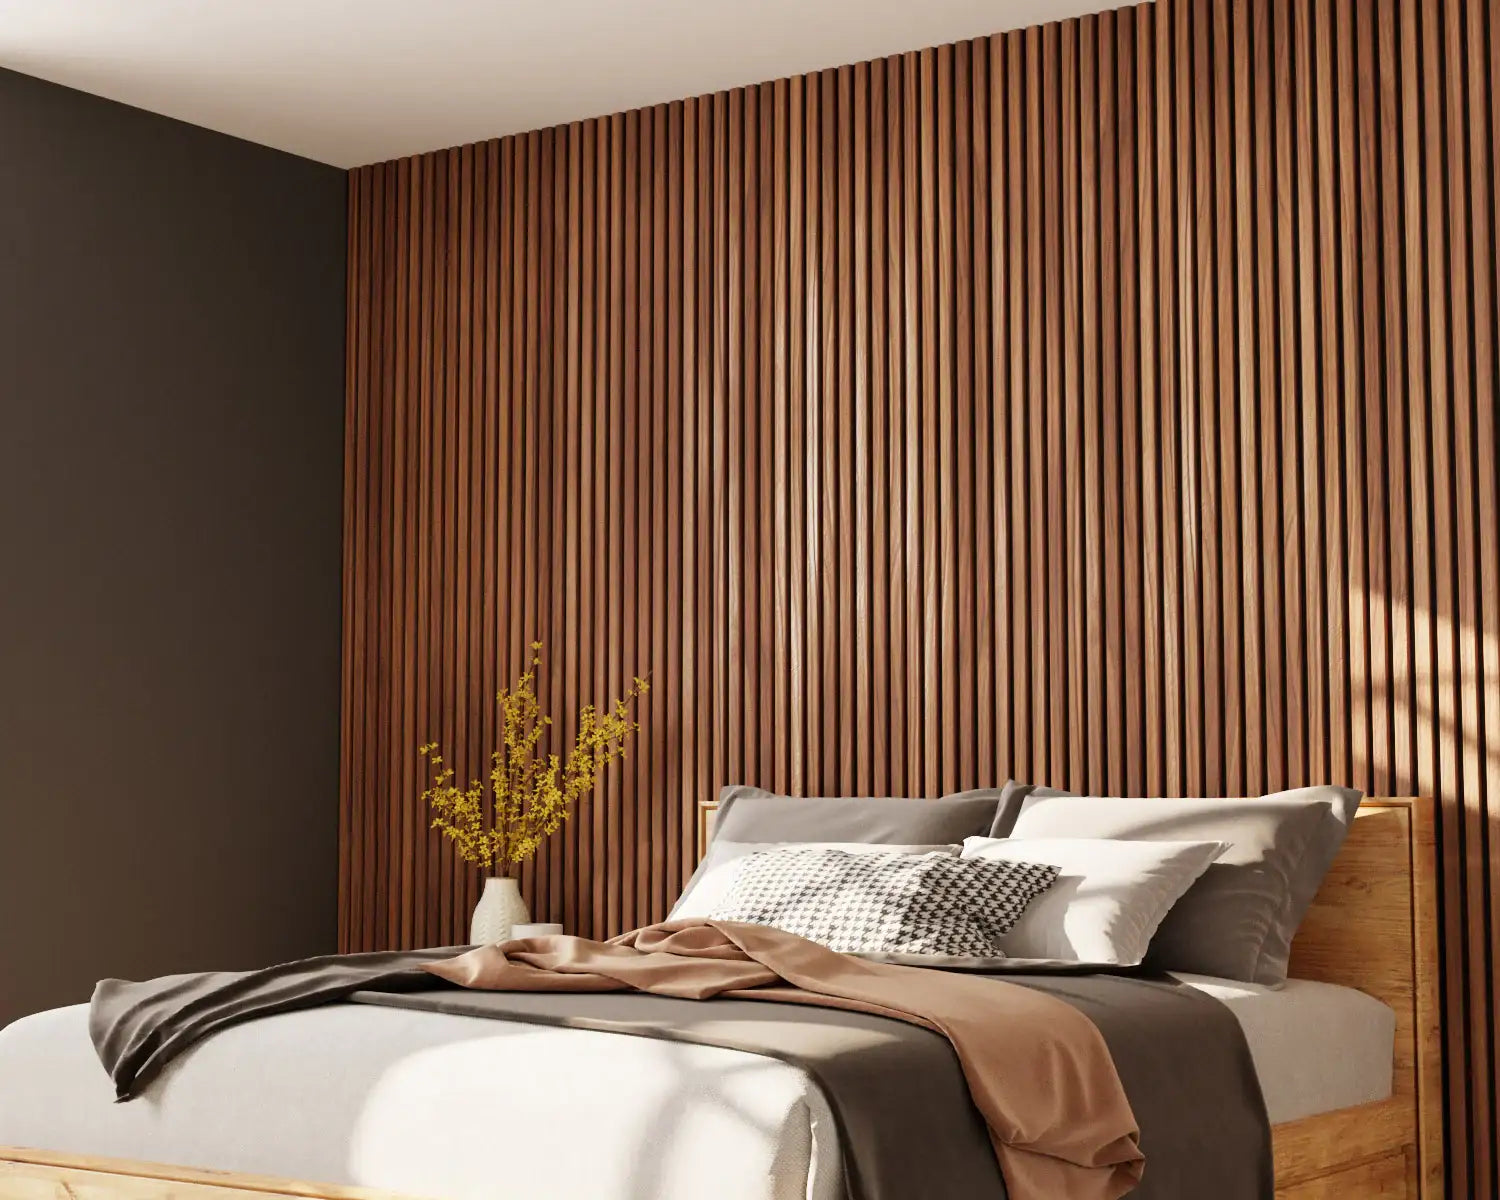 Walnut Solid Wood Slat Wall Panels - for Sale, Buy Online